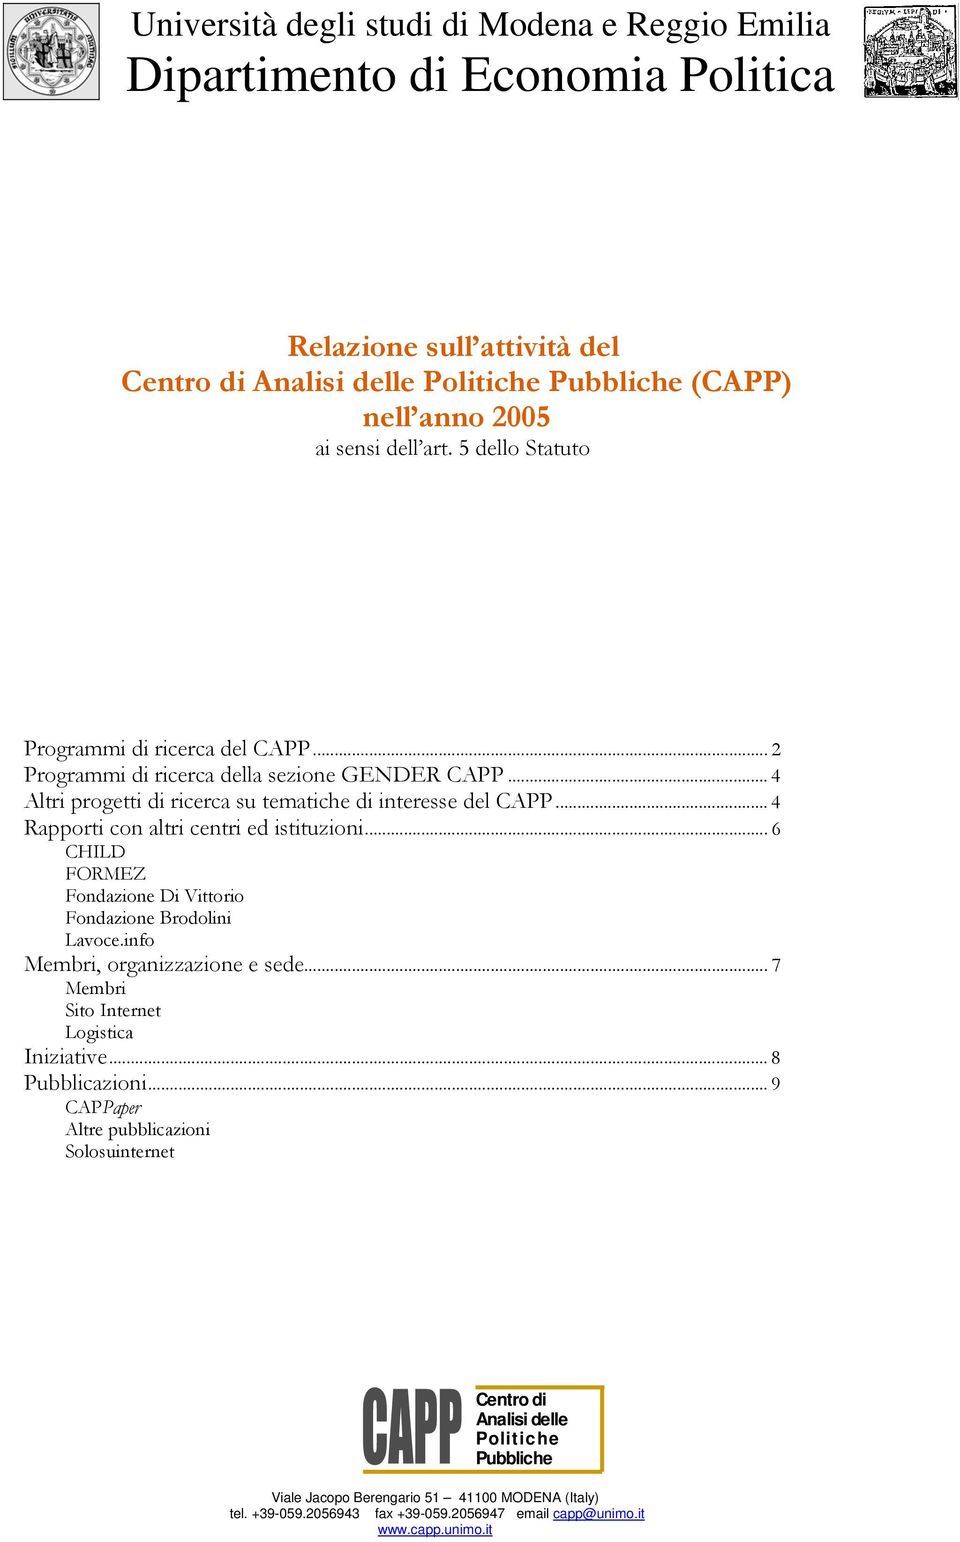 .. 4 Rapporti con altri centri ed istituzioni... 6 CHILD FORMEZ Fondazione Di Vittorio Fondazione Brodolini Lavoce.